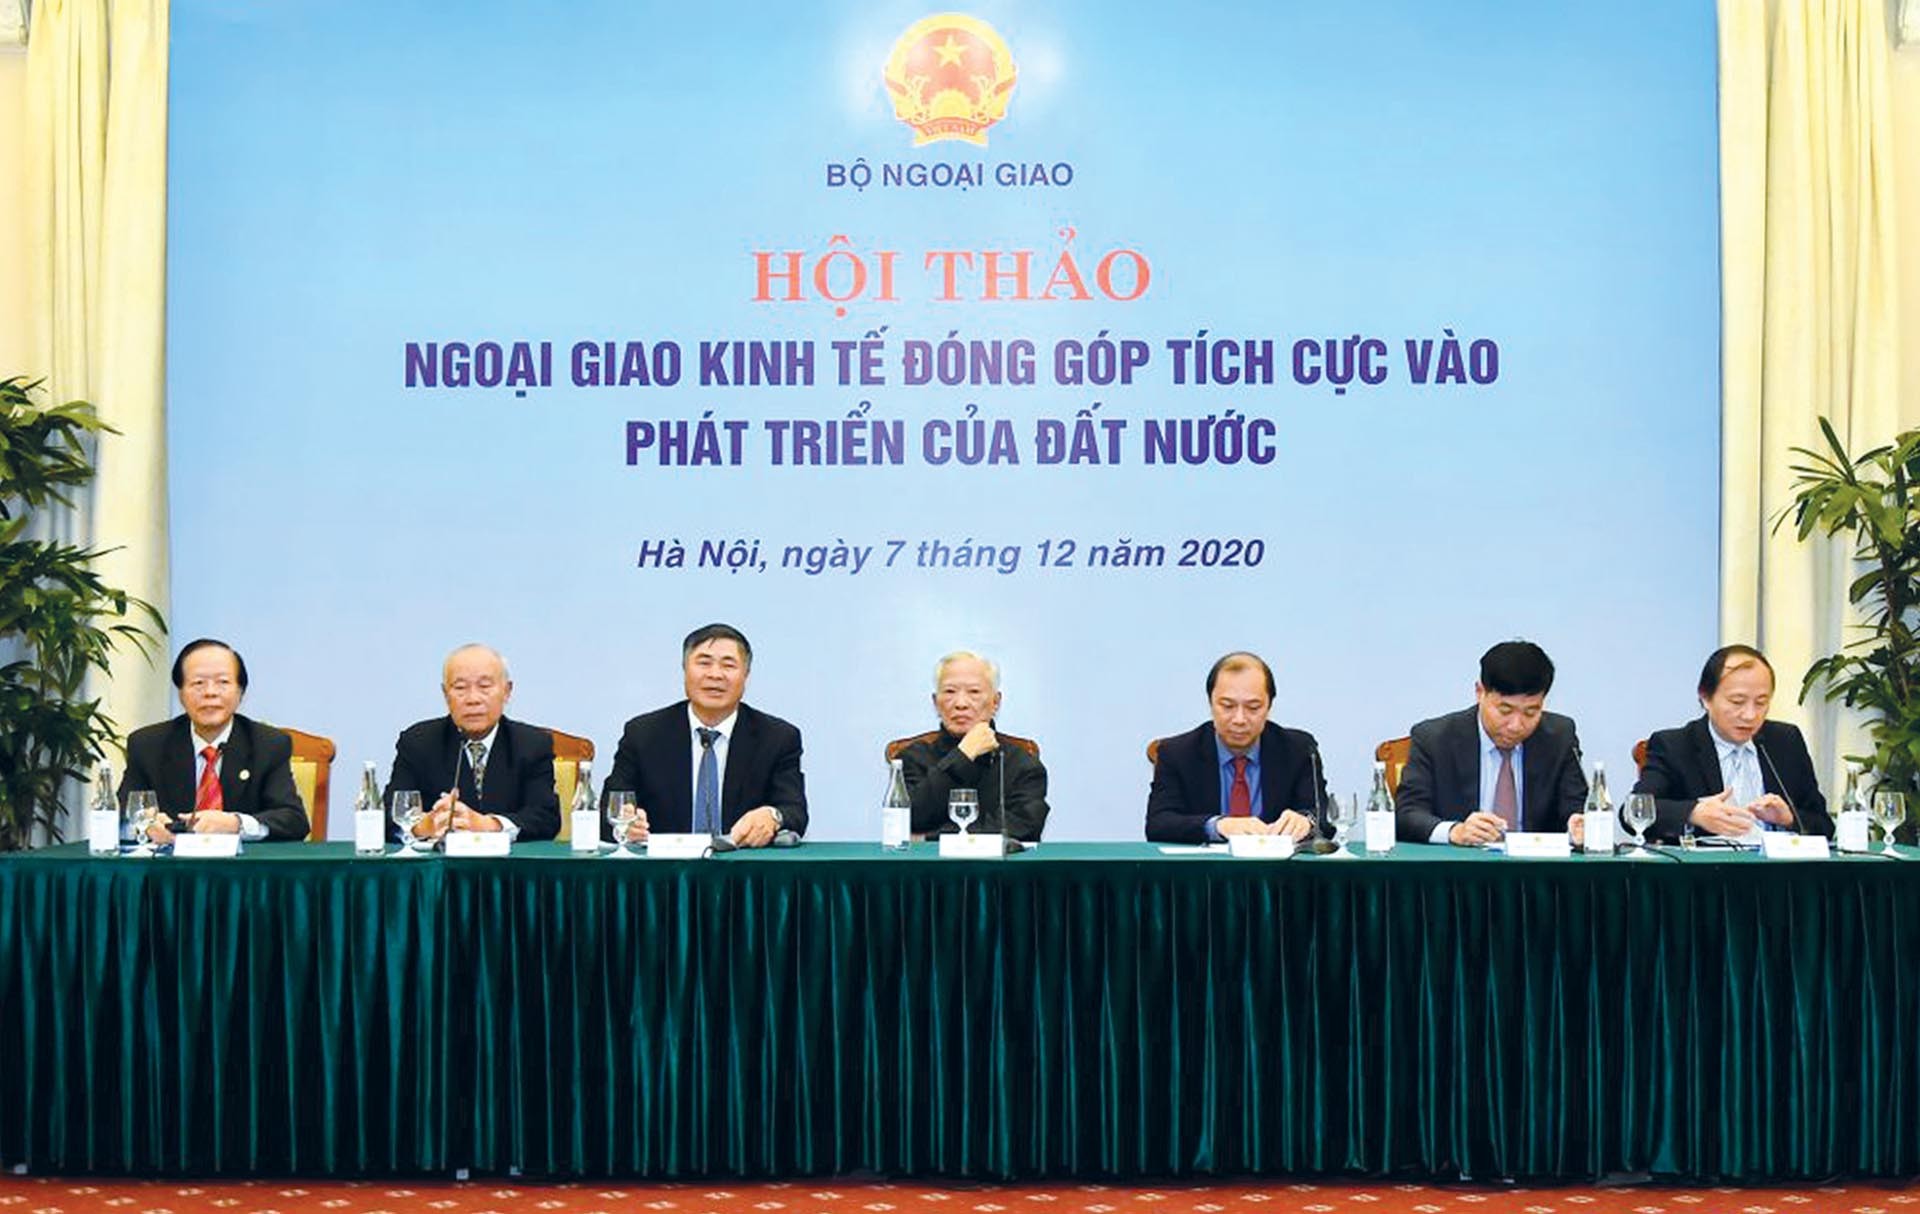 Đại sứ Đoàn Xuân Hưng (thứ ba từ trái) chủ trì phiên 1 của Hội thảo Ngoại giao kinh tế đóng góp tích cực vào phát triển của đất nước, ngày 7/12/2020. (Ảnh: Tuấn Anh)